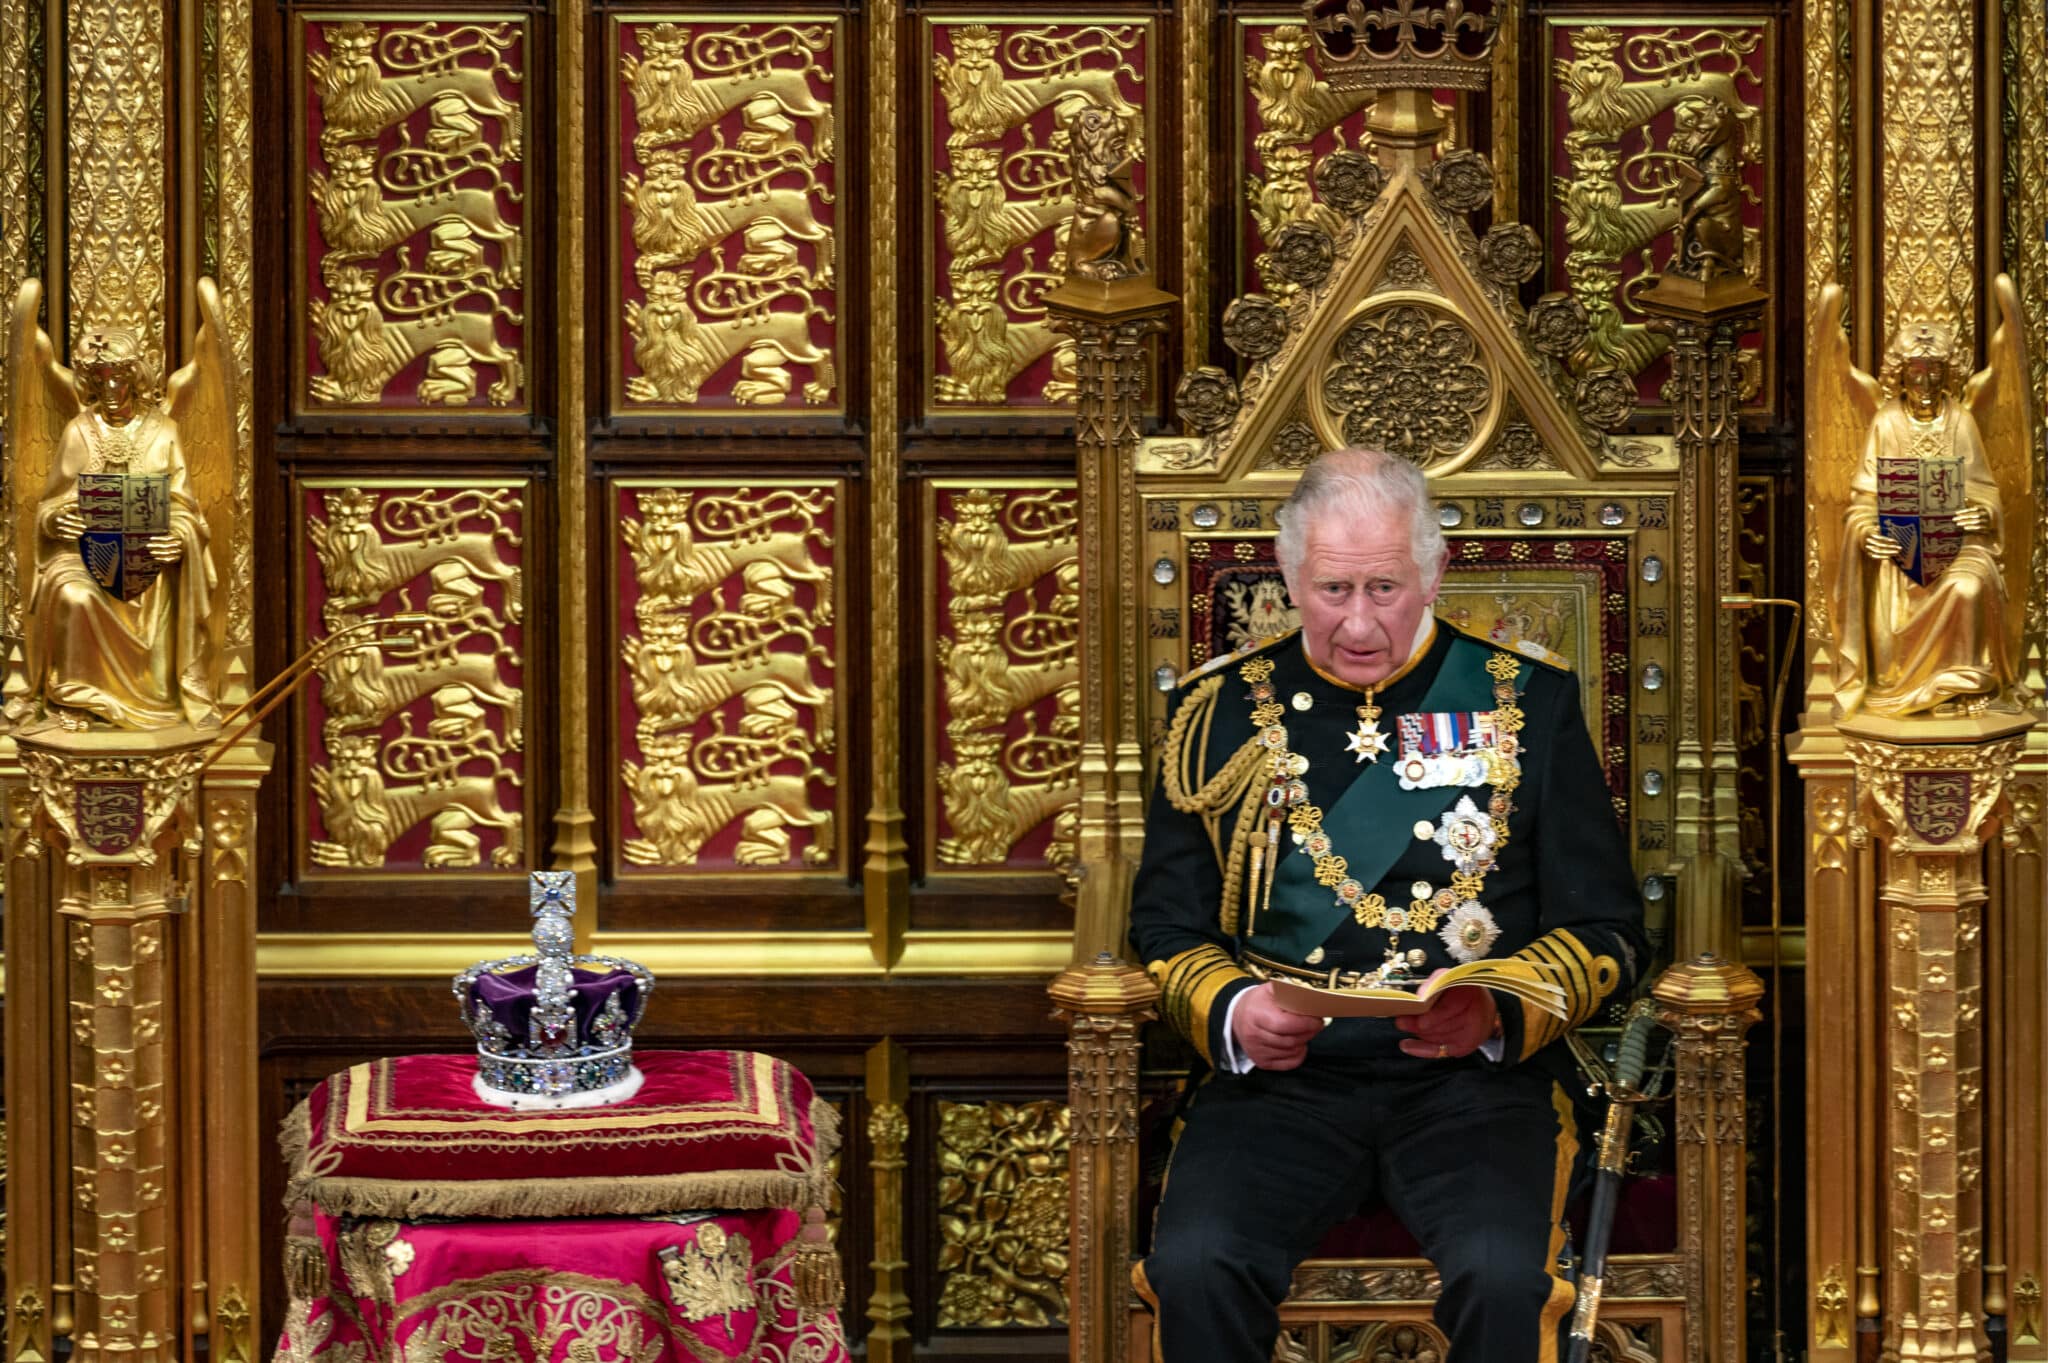 Le Prince de Galles prononce le discours. Il est rédigé par le gouvernement et présente son programme législatif pour la session 2022-23 - Copyright House of Lords 2022 / Photography by Annabel Moeller | Creative Commons BY 2.0